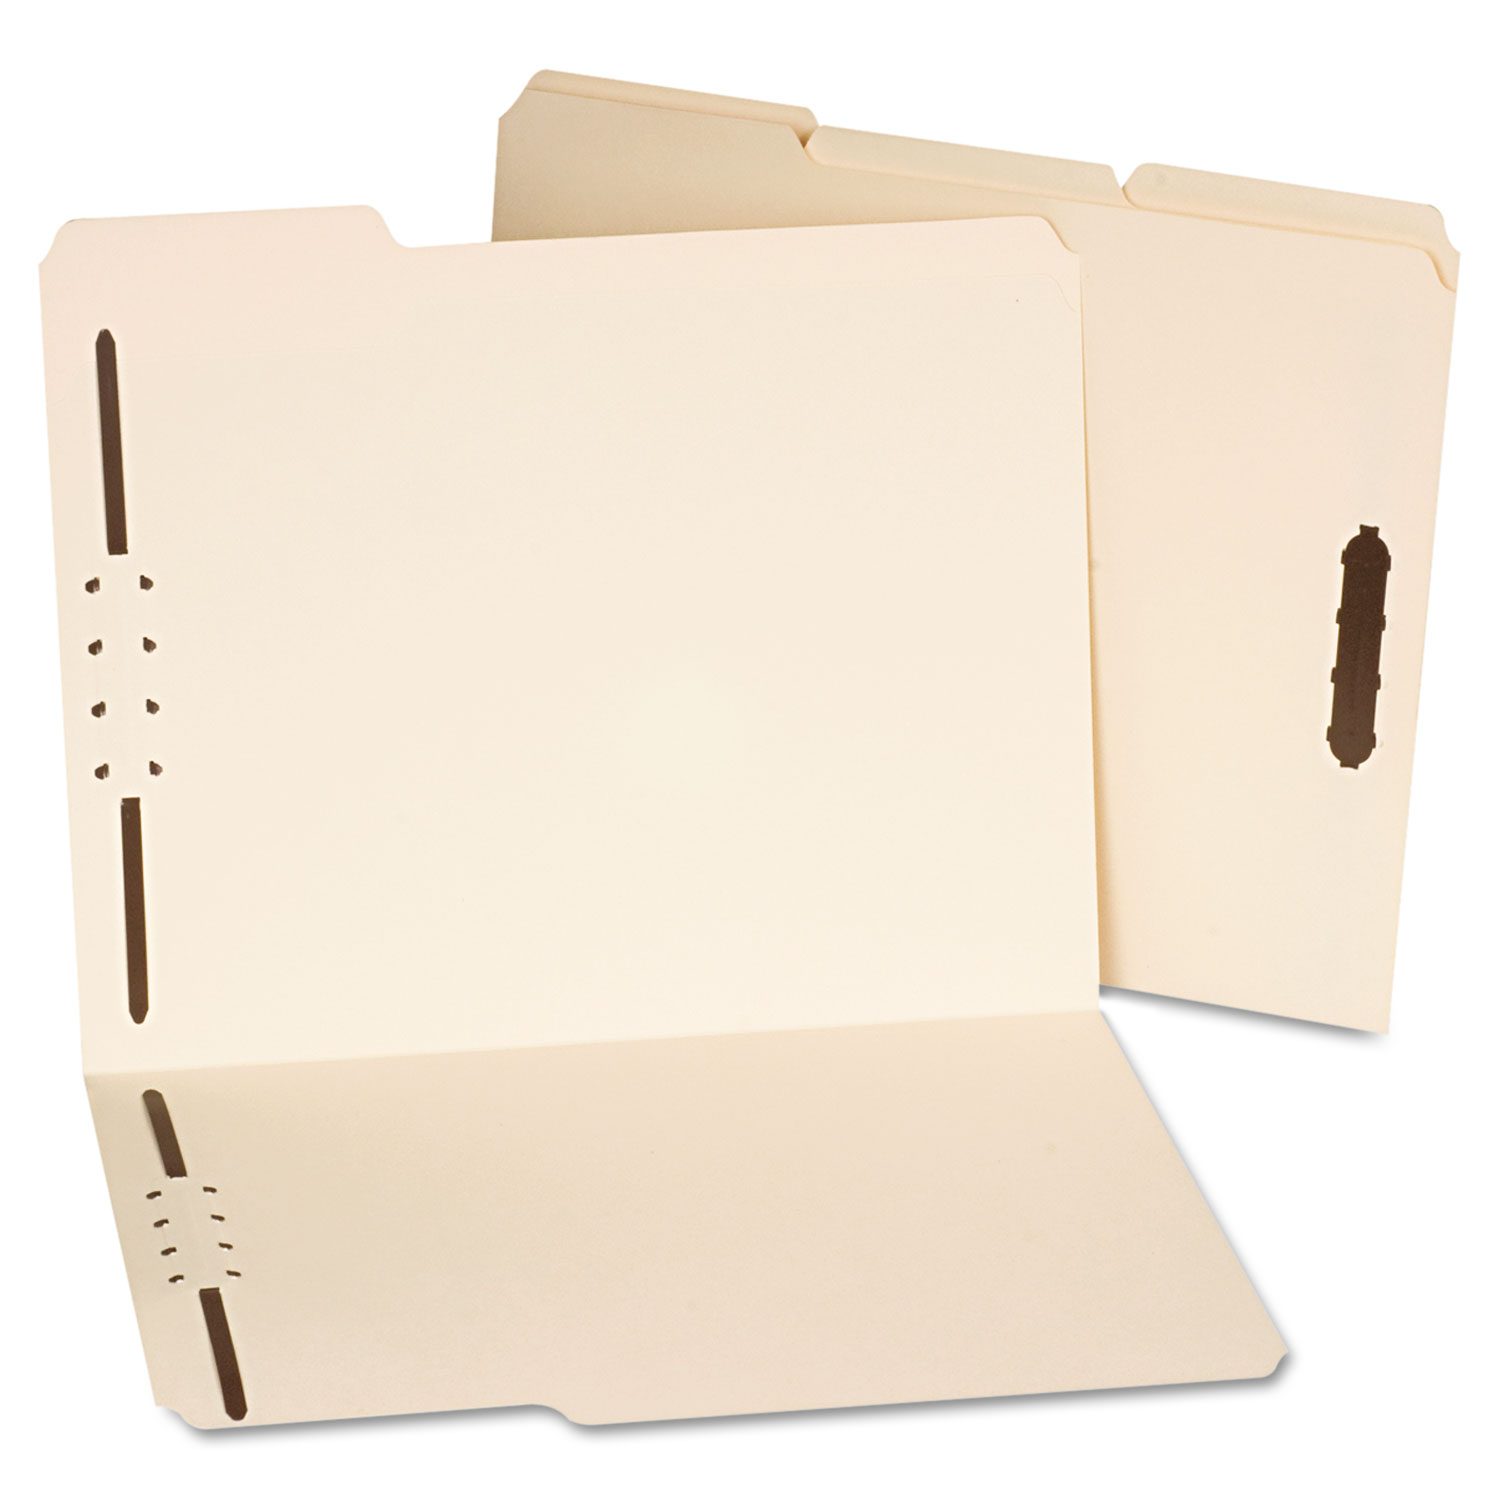 Deluxe Reinforced Top Tab Folders, 2 Fasteners, 1/3 Tab, Letter, Manila, 50/Box